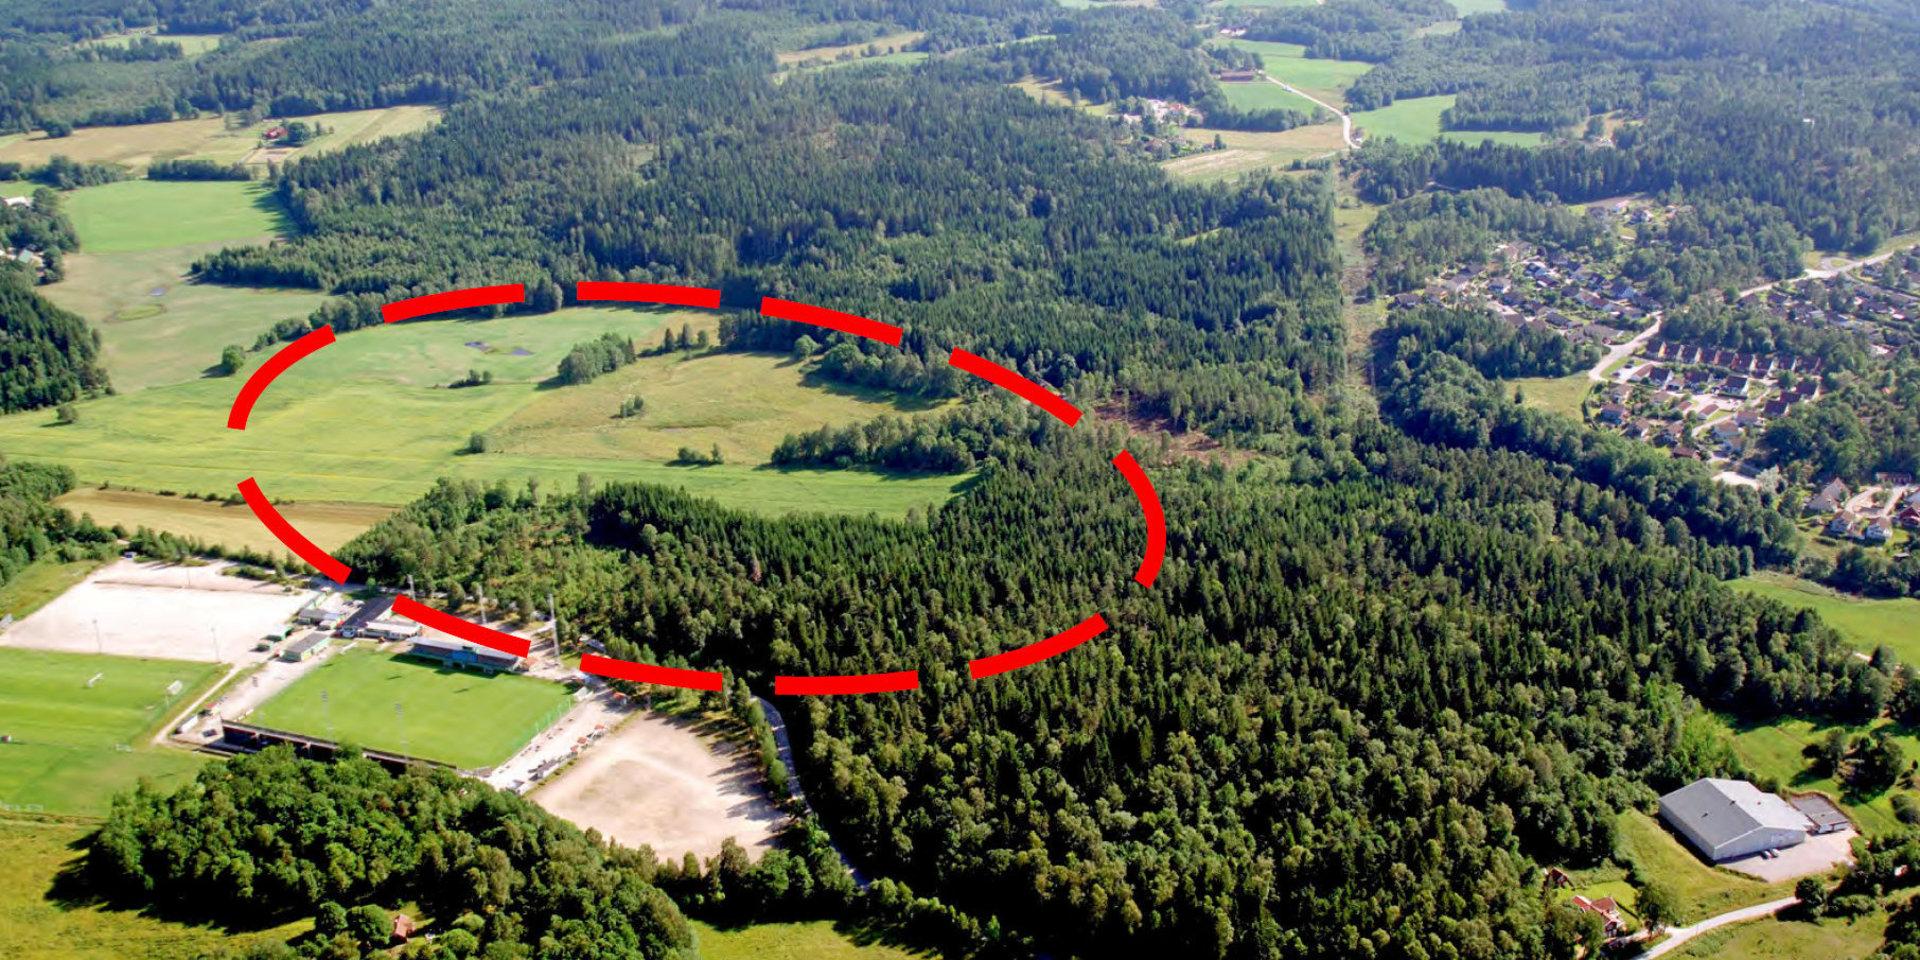 Beslut om utbyggnad av Skarsjöområdet togs redan 2007. Nu är planerna aktuella igen och presenteras på en boende- och byggandemässa i Ljungskile. Bilden är tagen innan 2013.